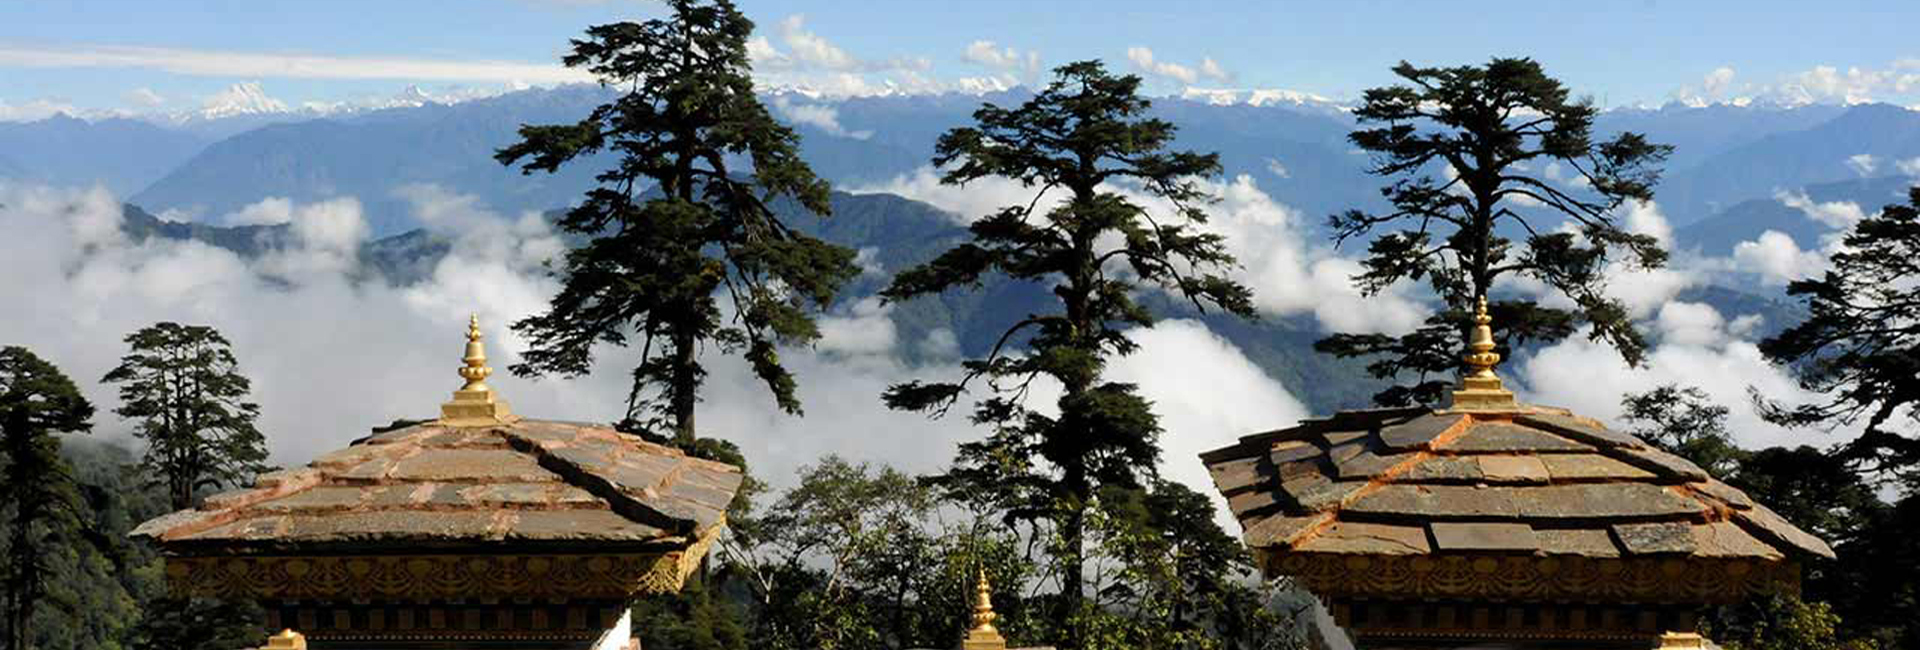 Thimphu - Paro - Punakha Tour